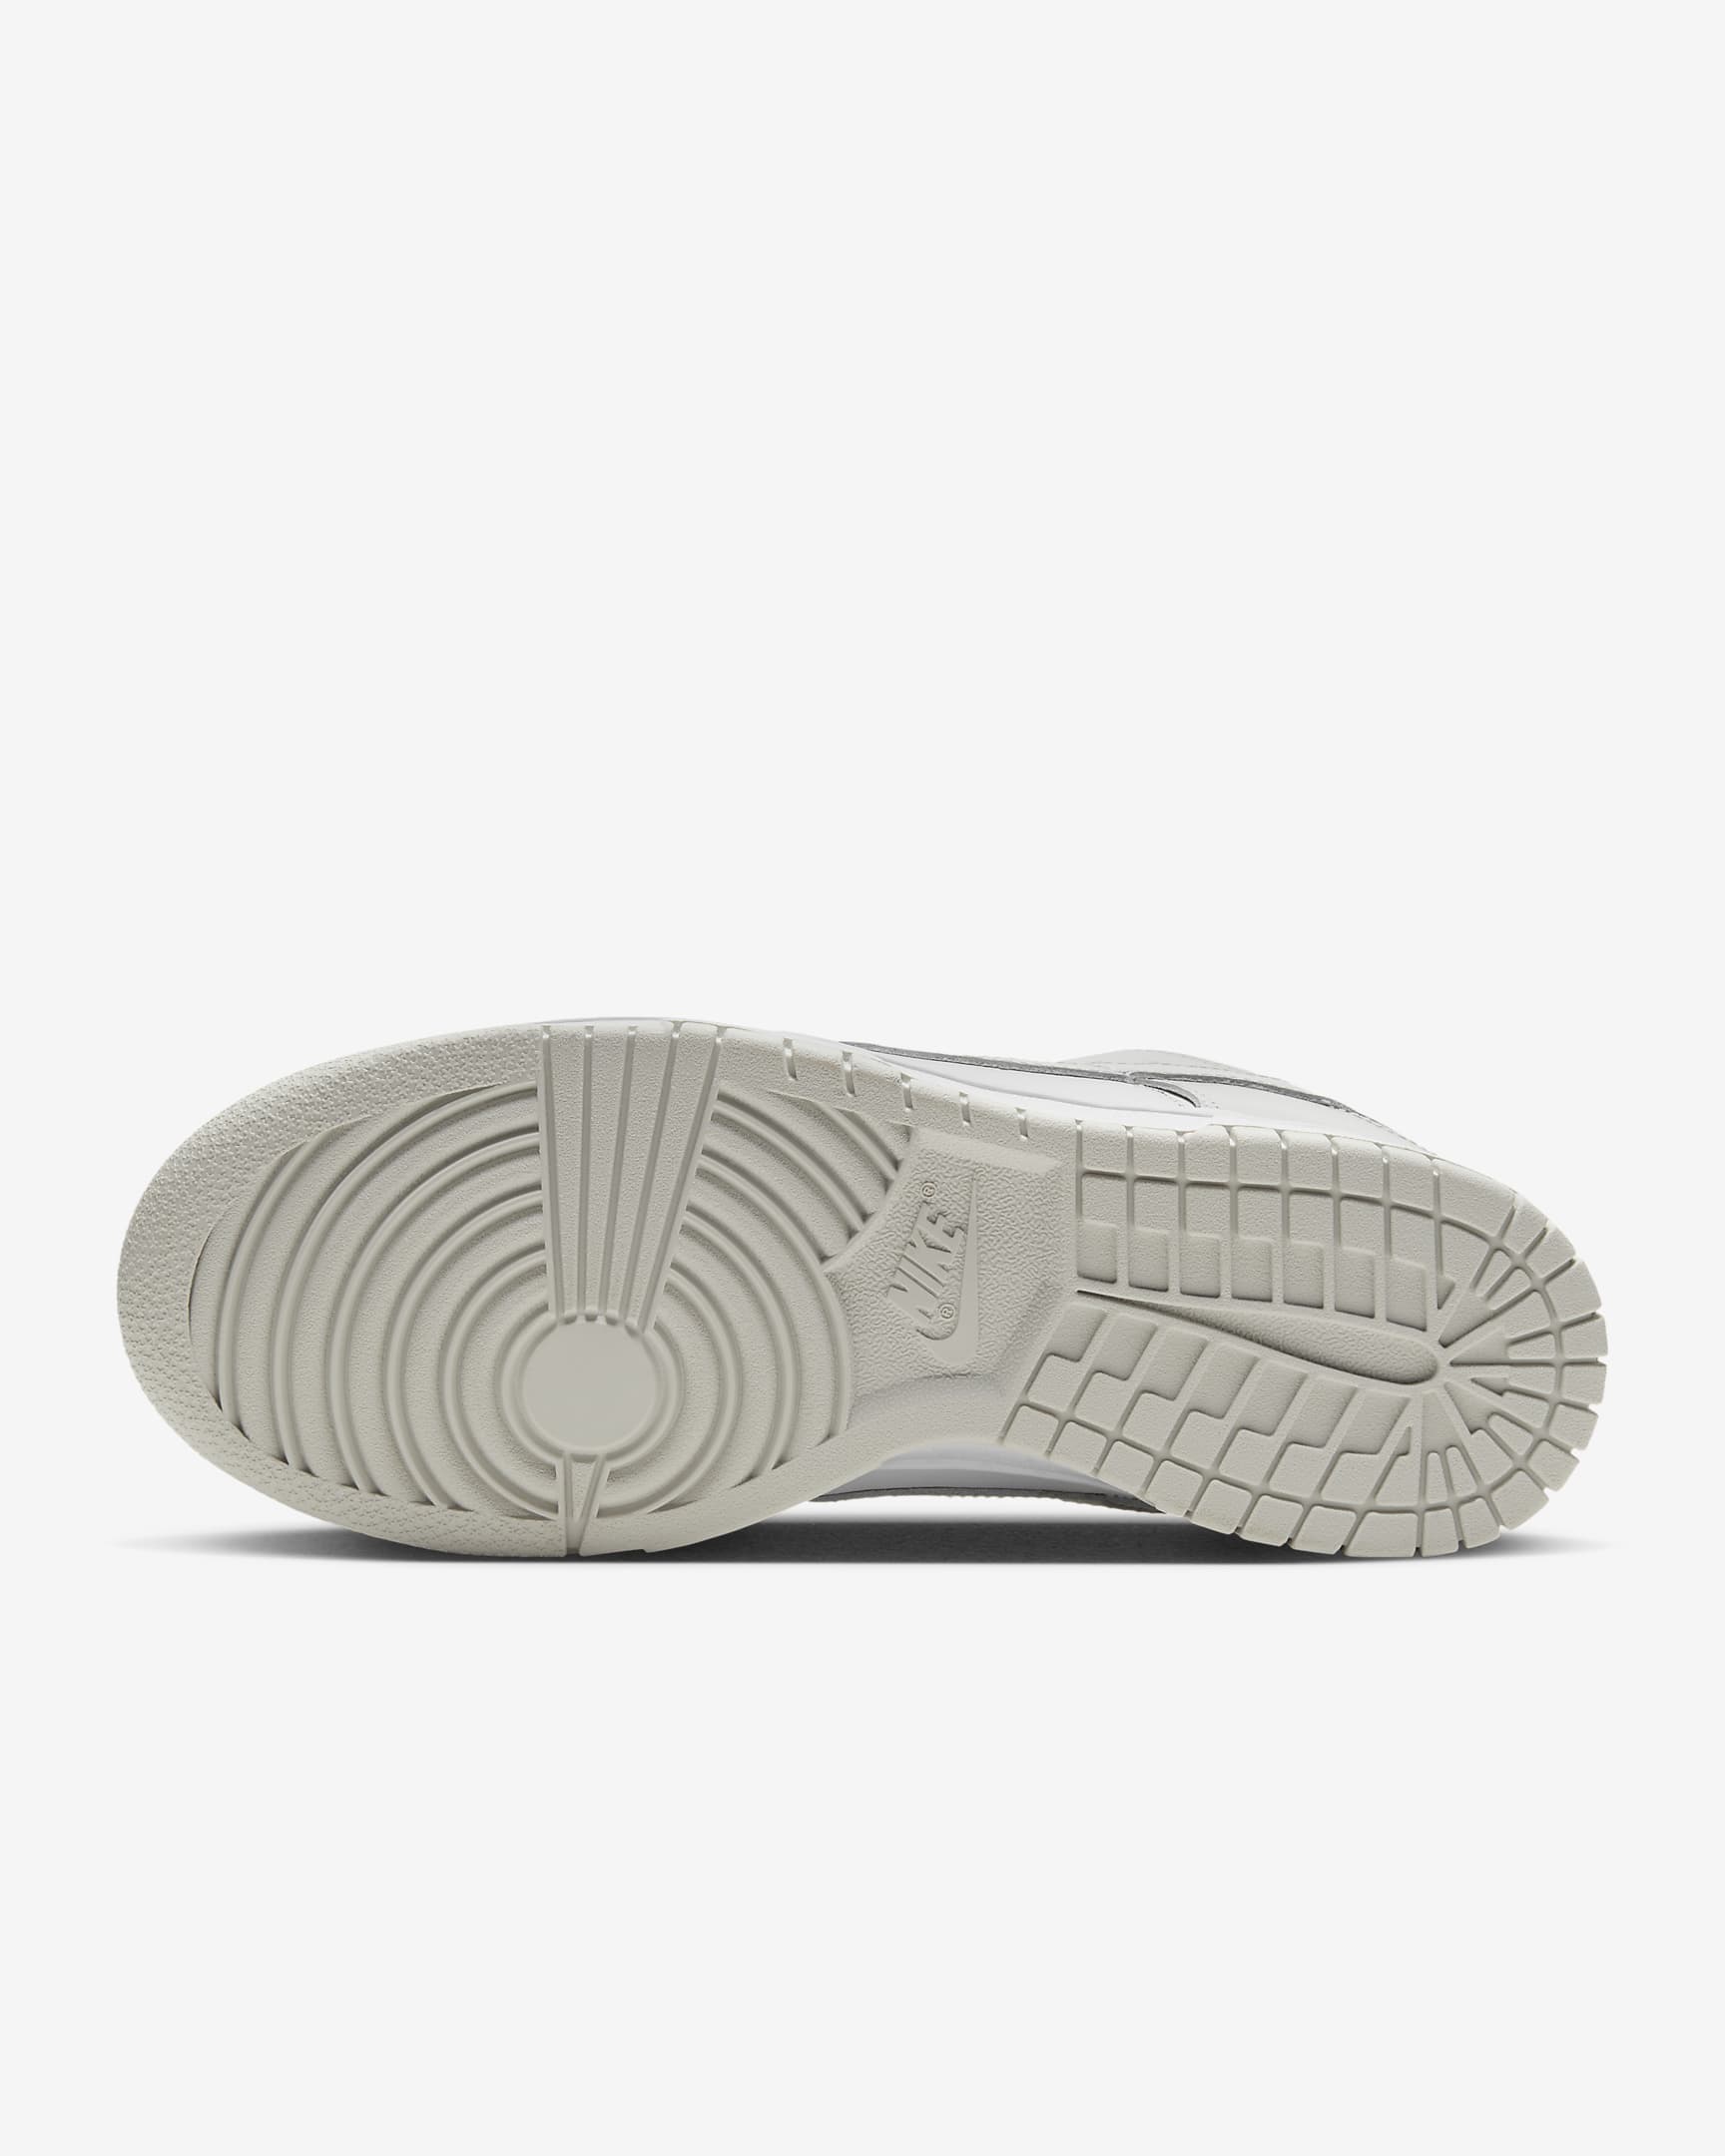 Chaussure Nike Dunk Low pour Femme - Blanc/Blanc/Photon Dust